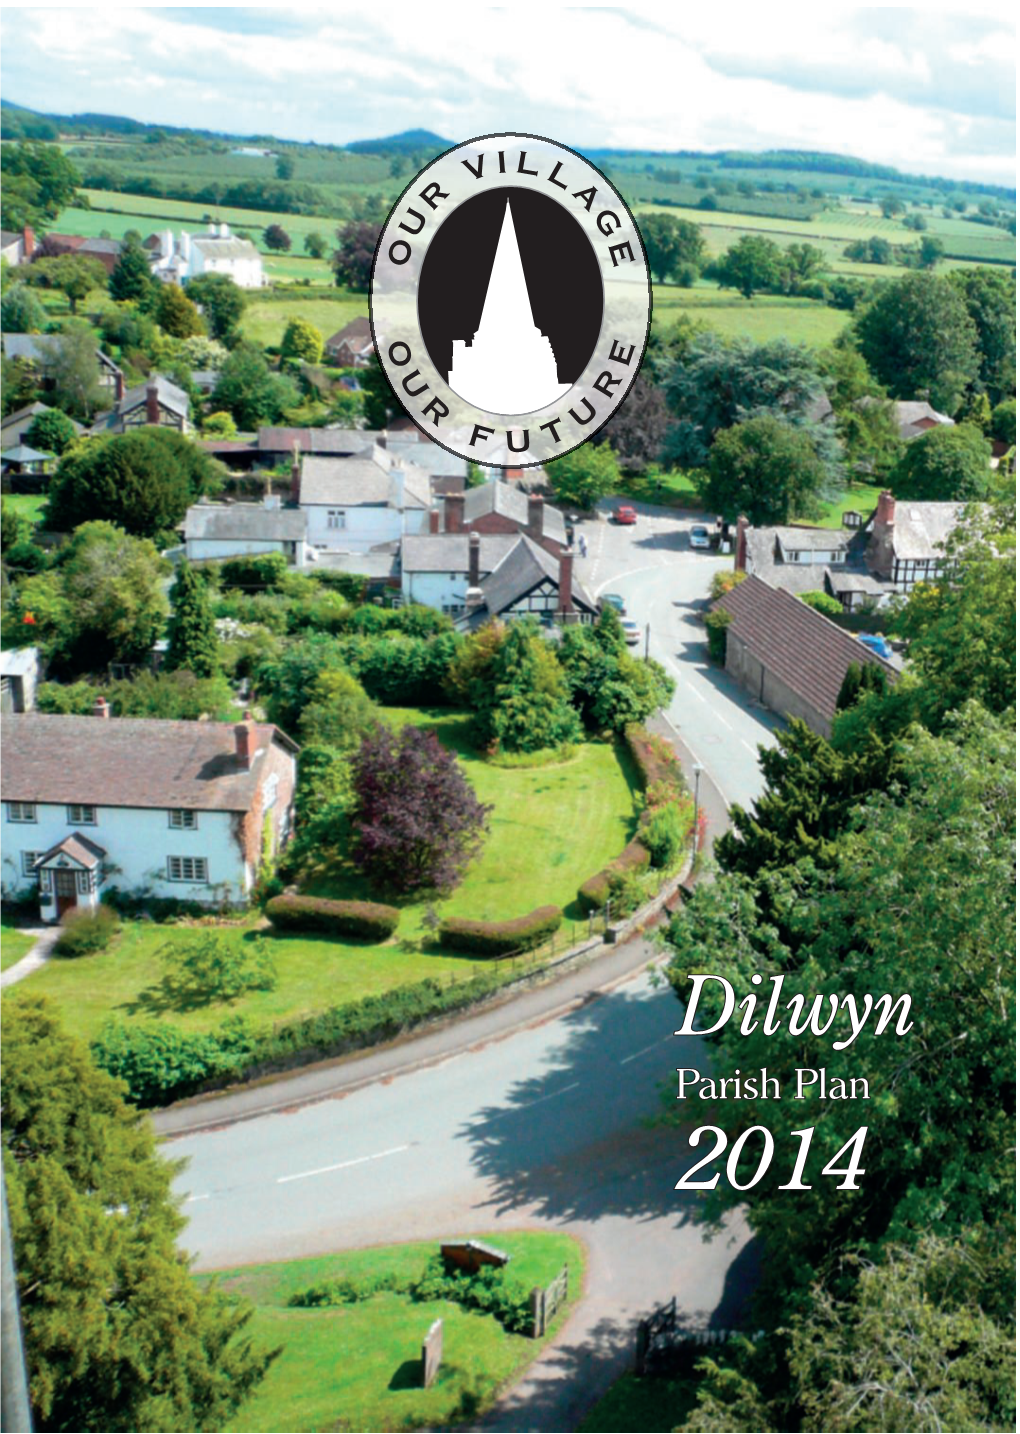 Dilwyn Parish Plan 2014 IL L V a Dilwyn R G U E